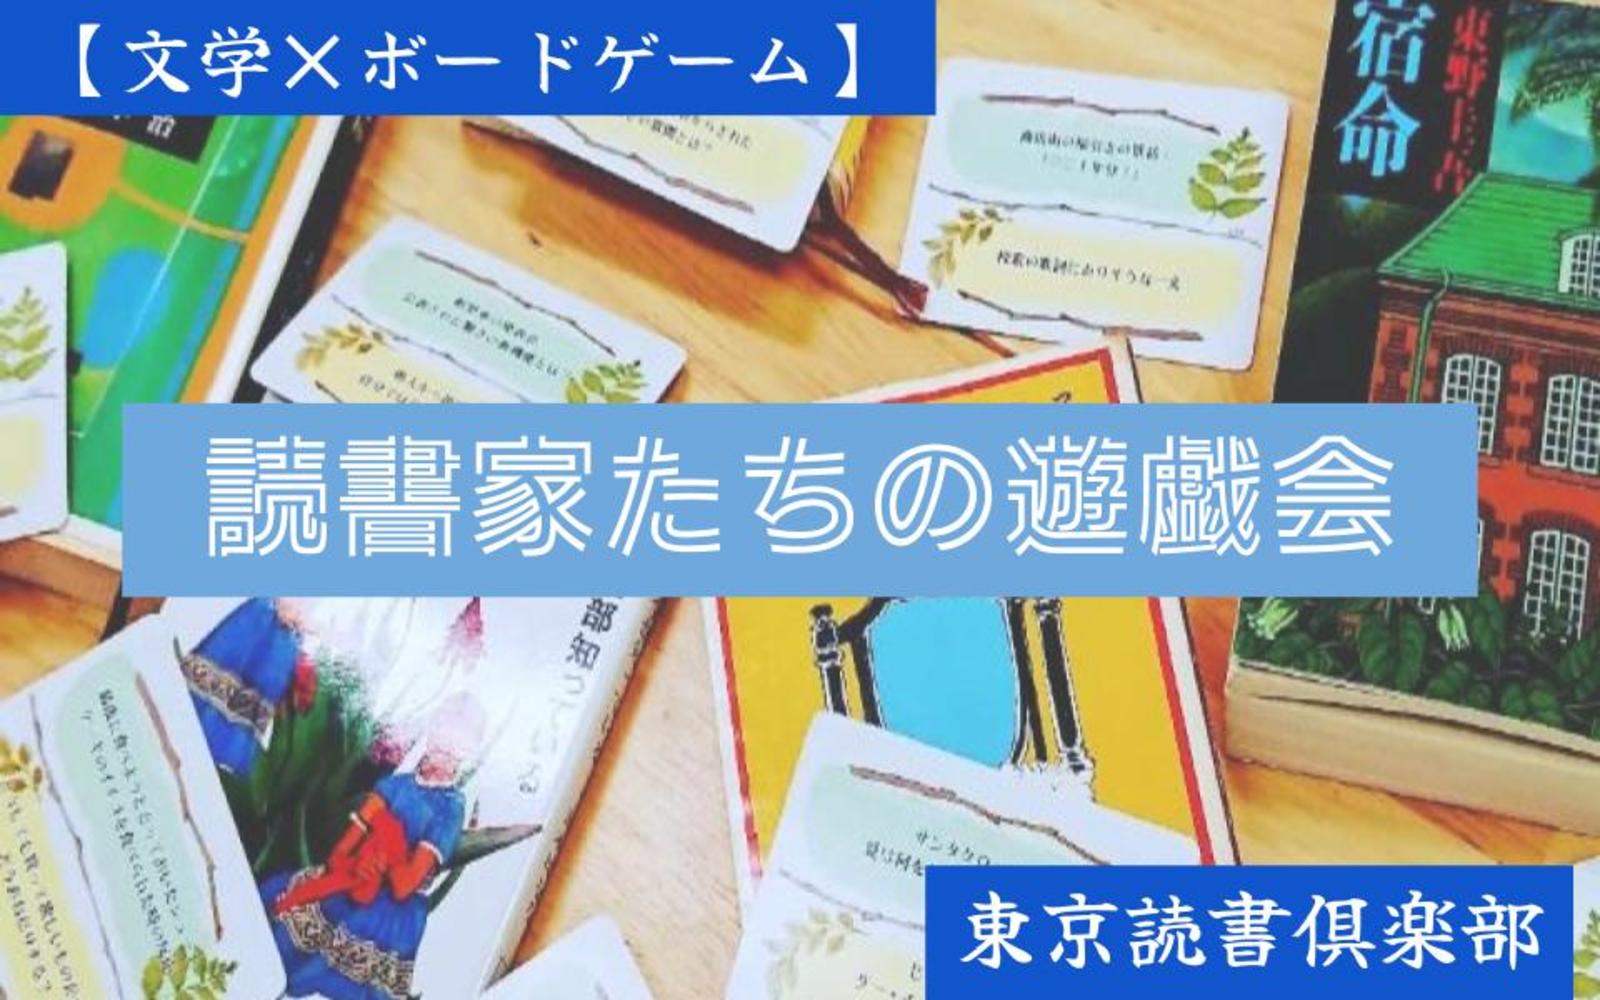 【文学×ボードゲーム】読書家のためのボードゲーム会